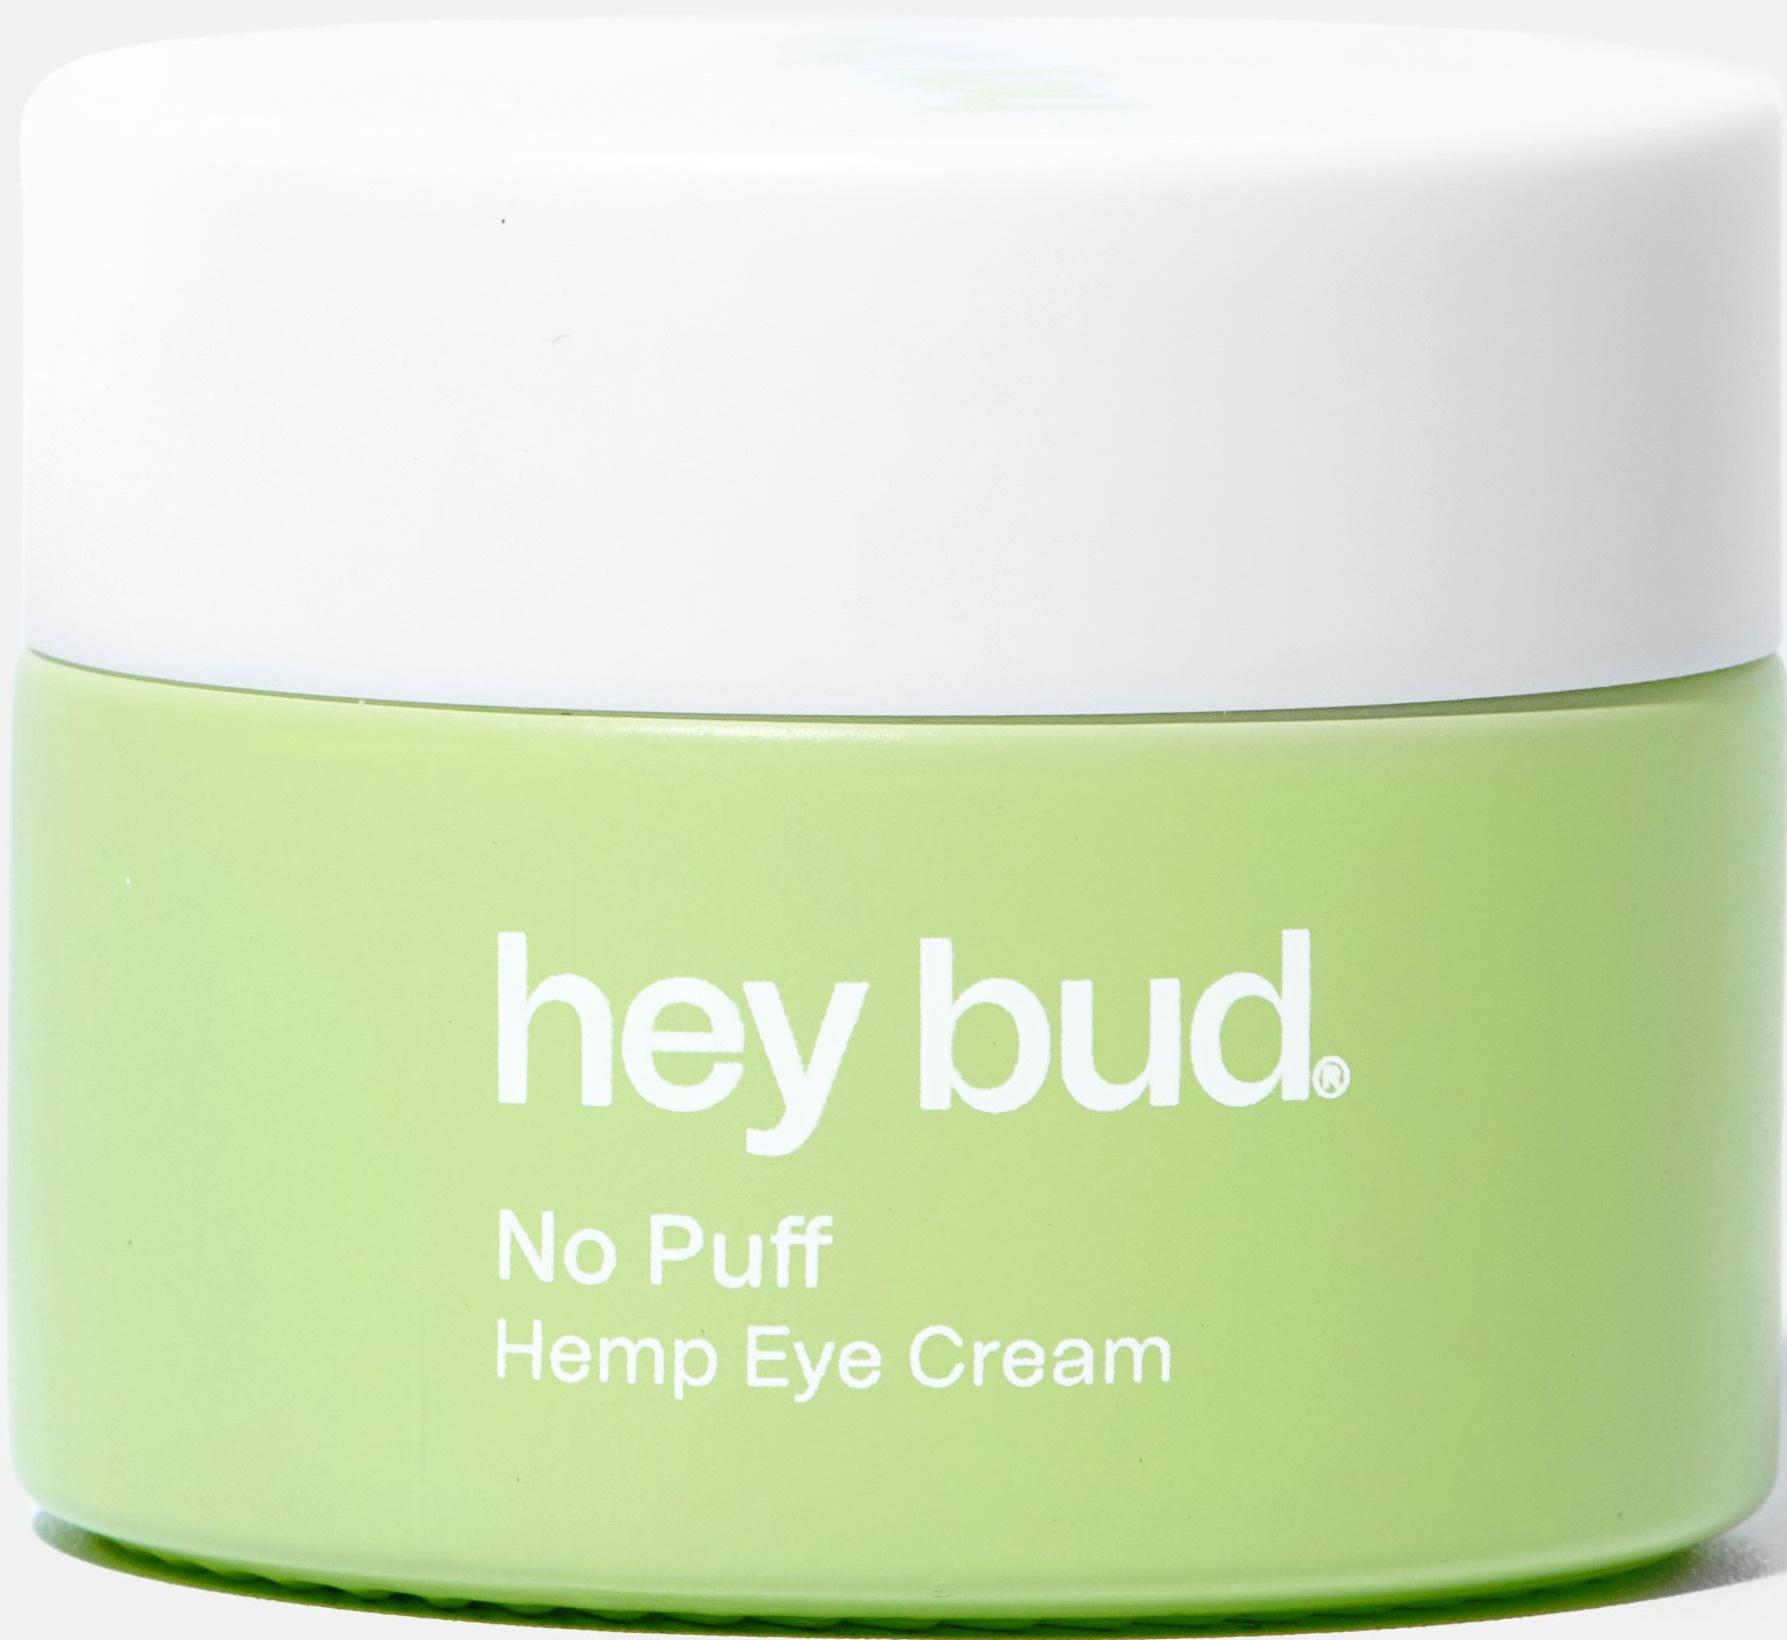 hey bud Hemp Eye Cream